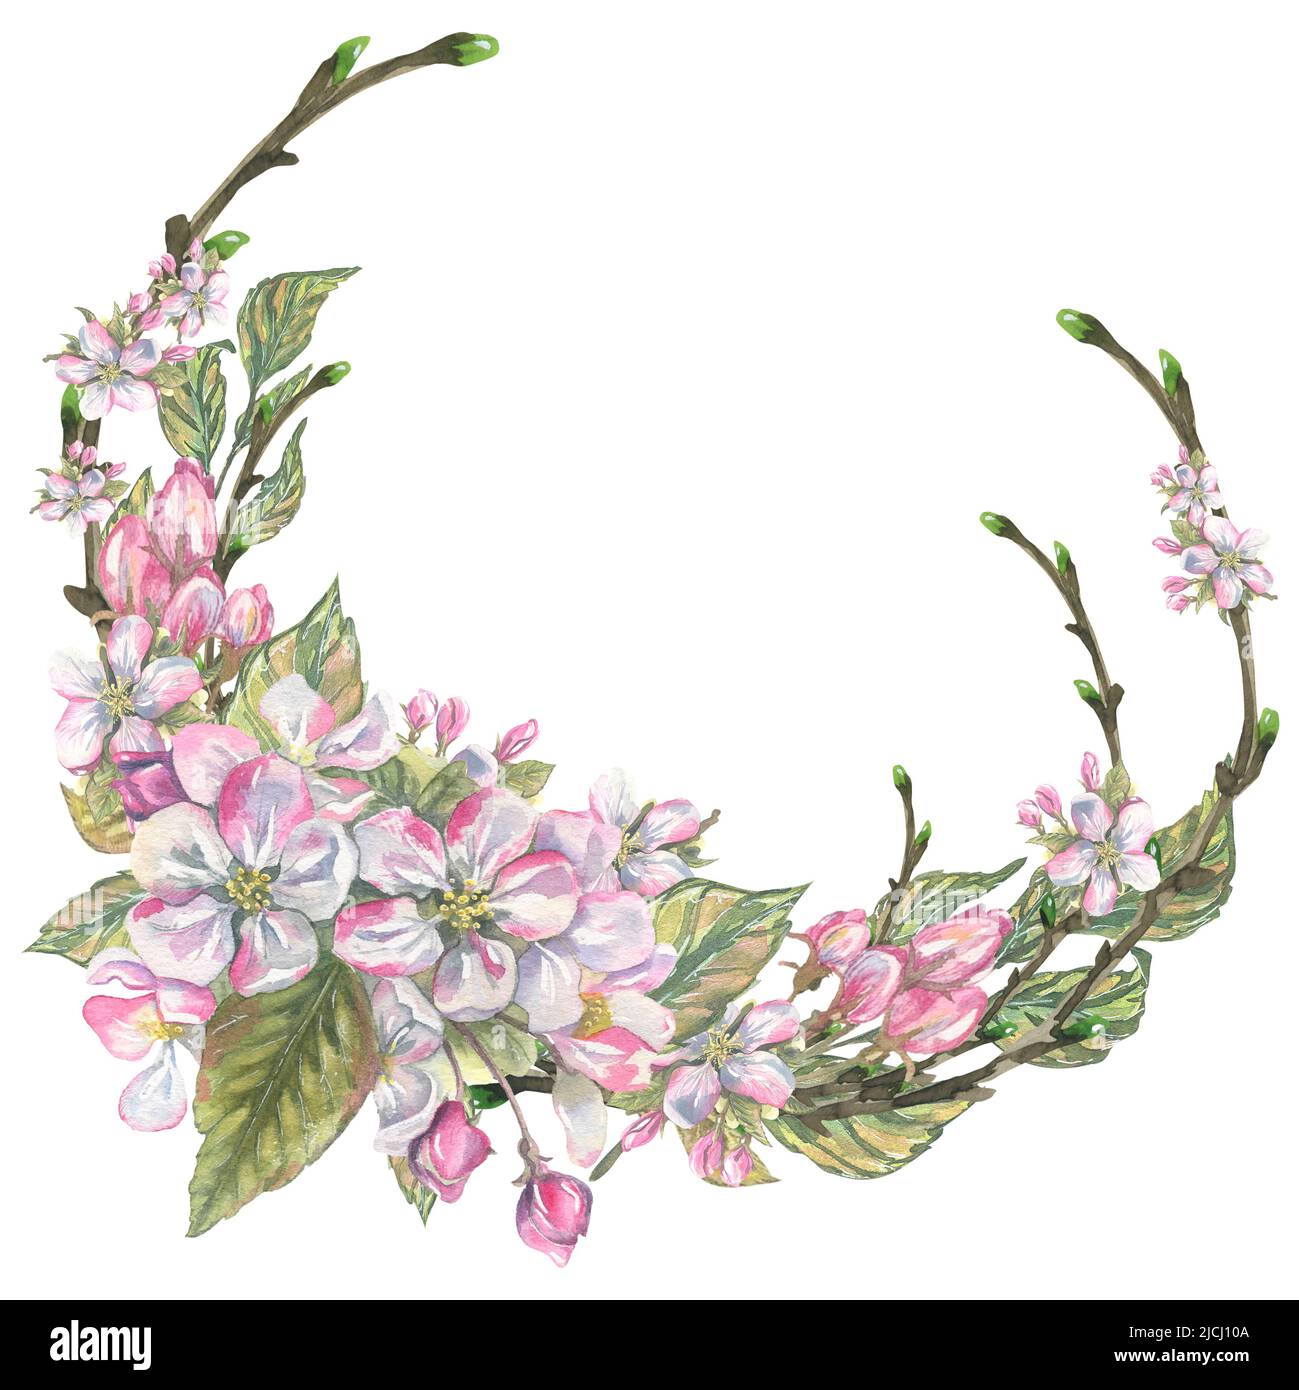 Ein runder Rahmen, ein Kranz aus Zweigen, Blumen, Blättern, Knospen von Apfelblüten. Aquarelldarstellung. Für die Gestaltung von Postkarten, Plakaten, Einladungen Stockfoto